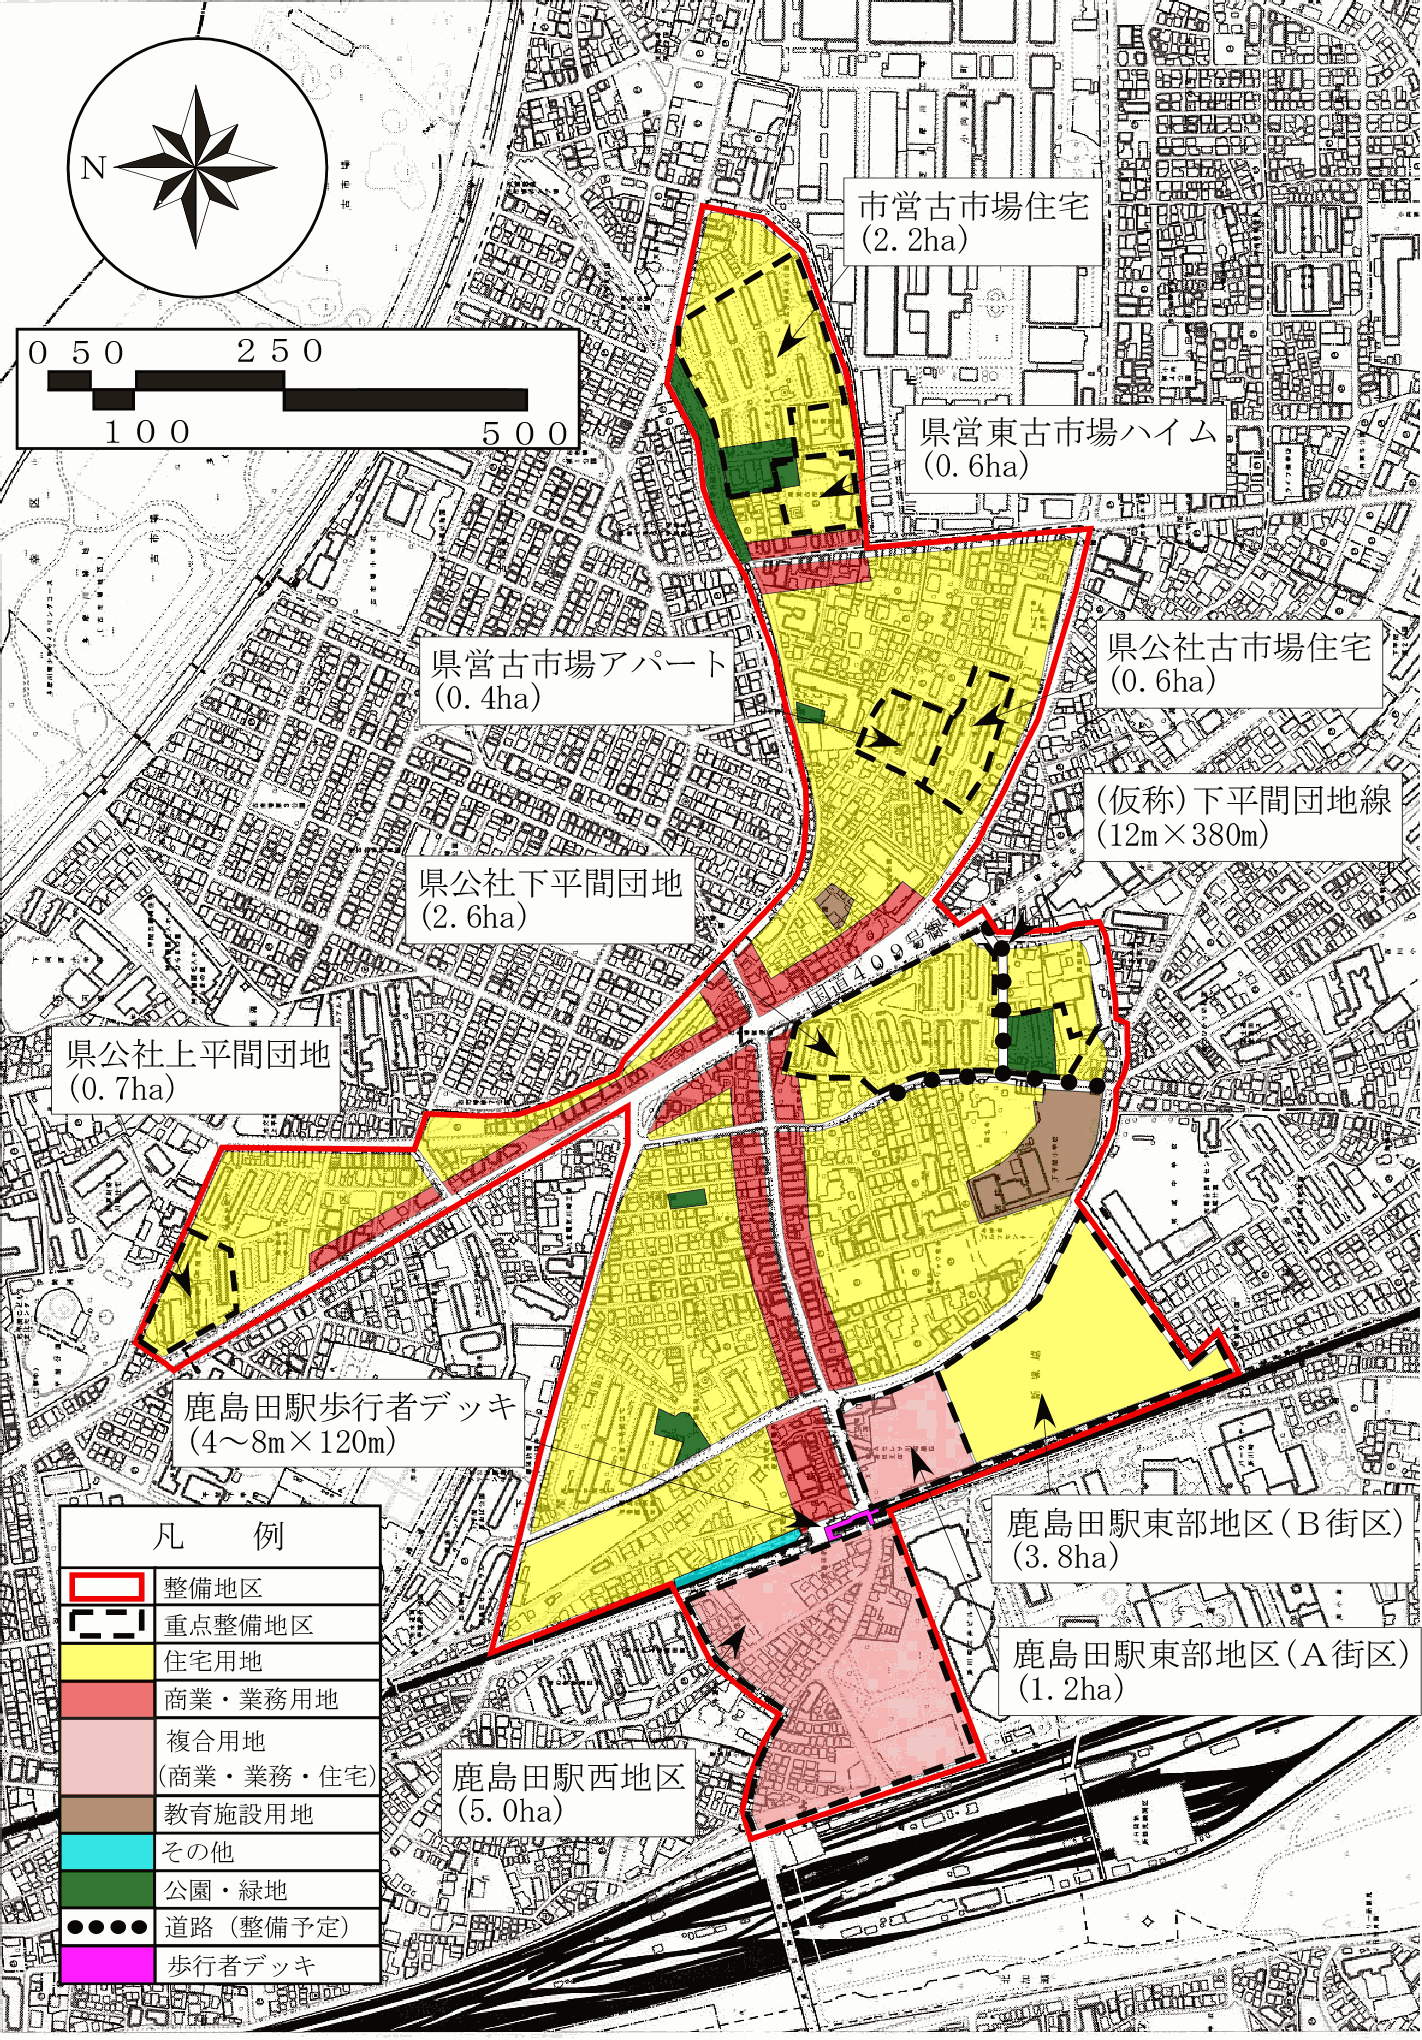 川崎下平間周辺地区住宅市街地総合整備事業の区域図